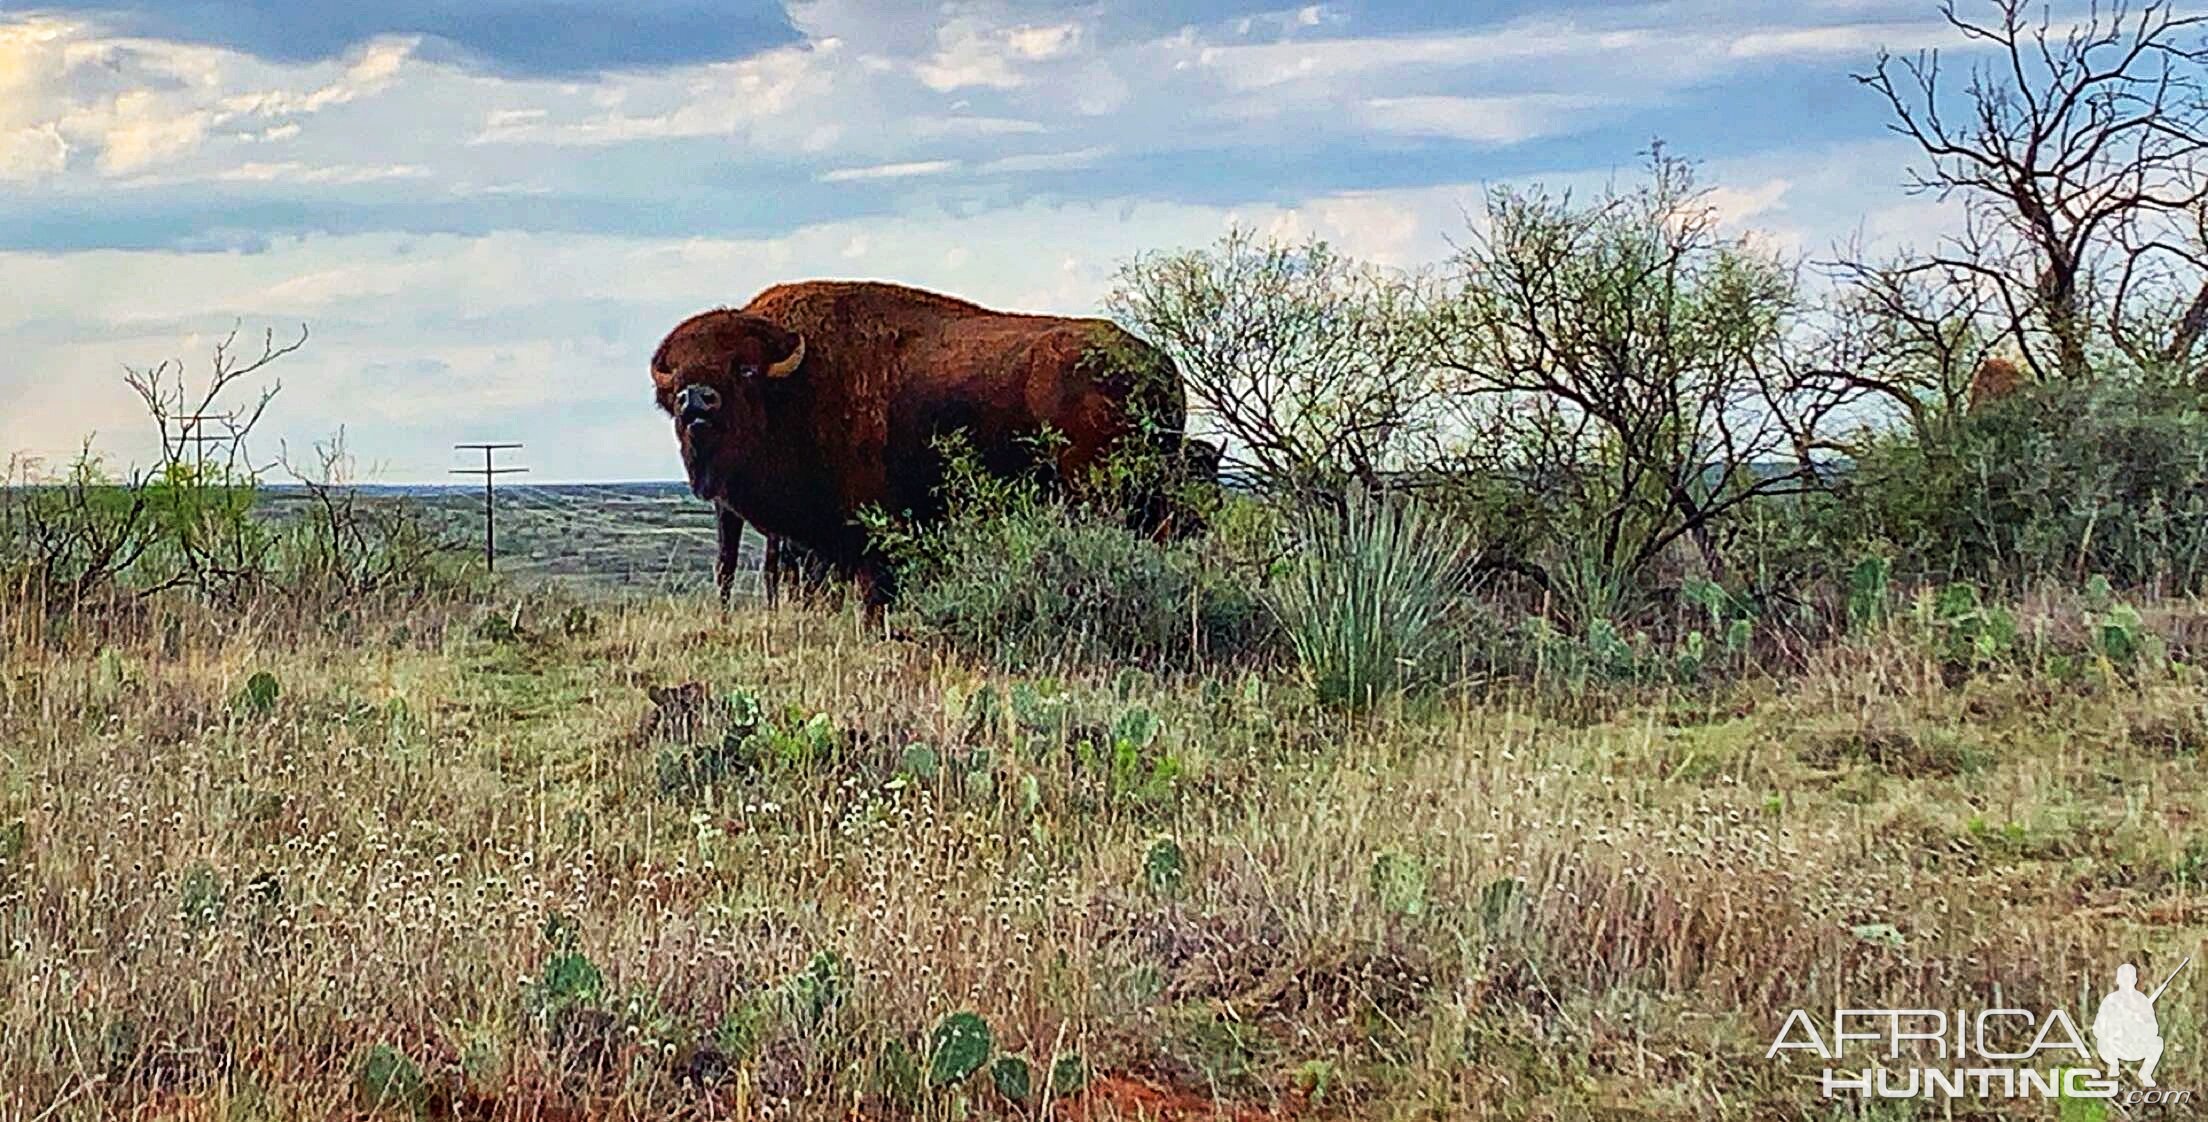 Bison Texas USA